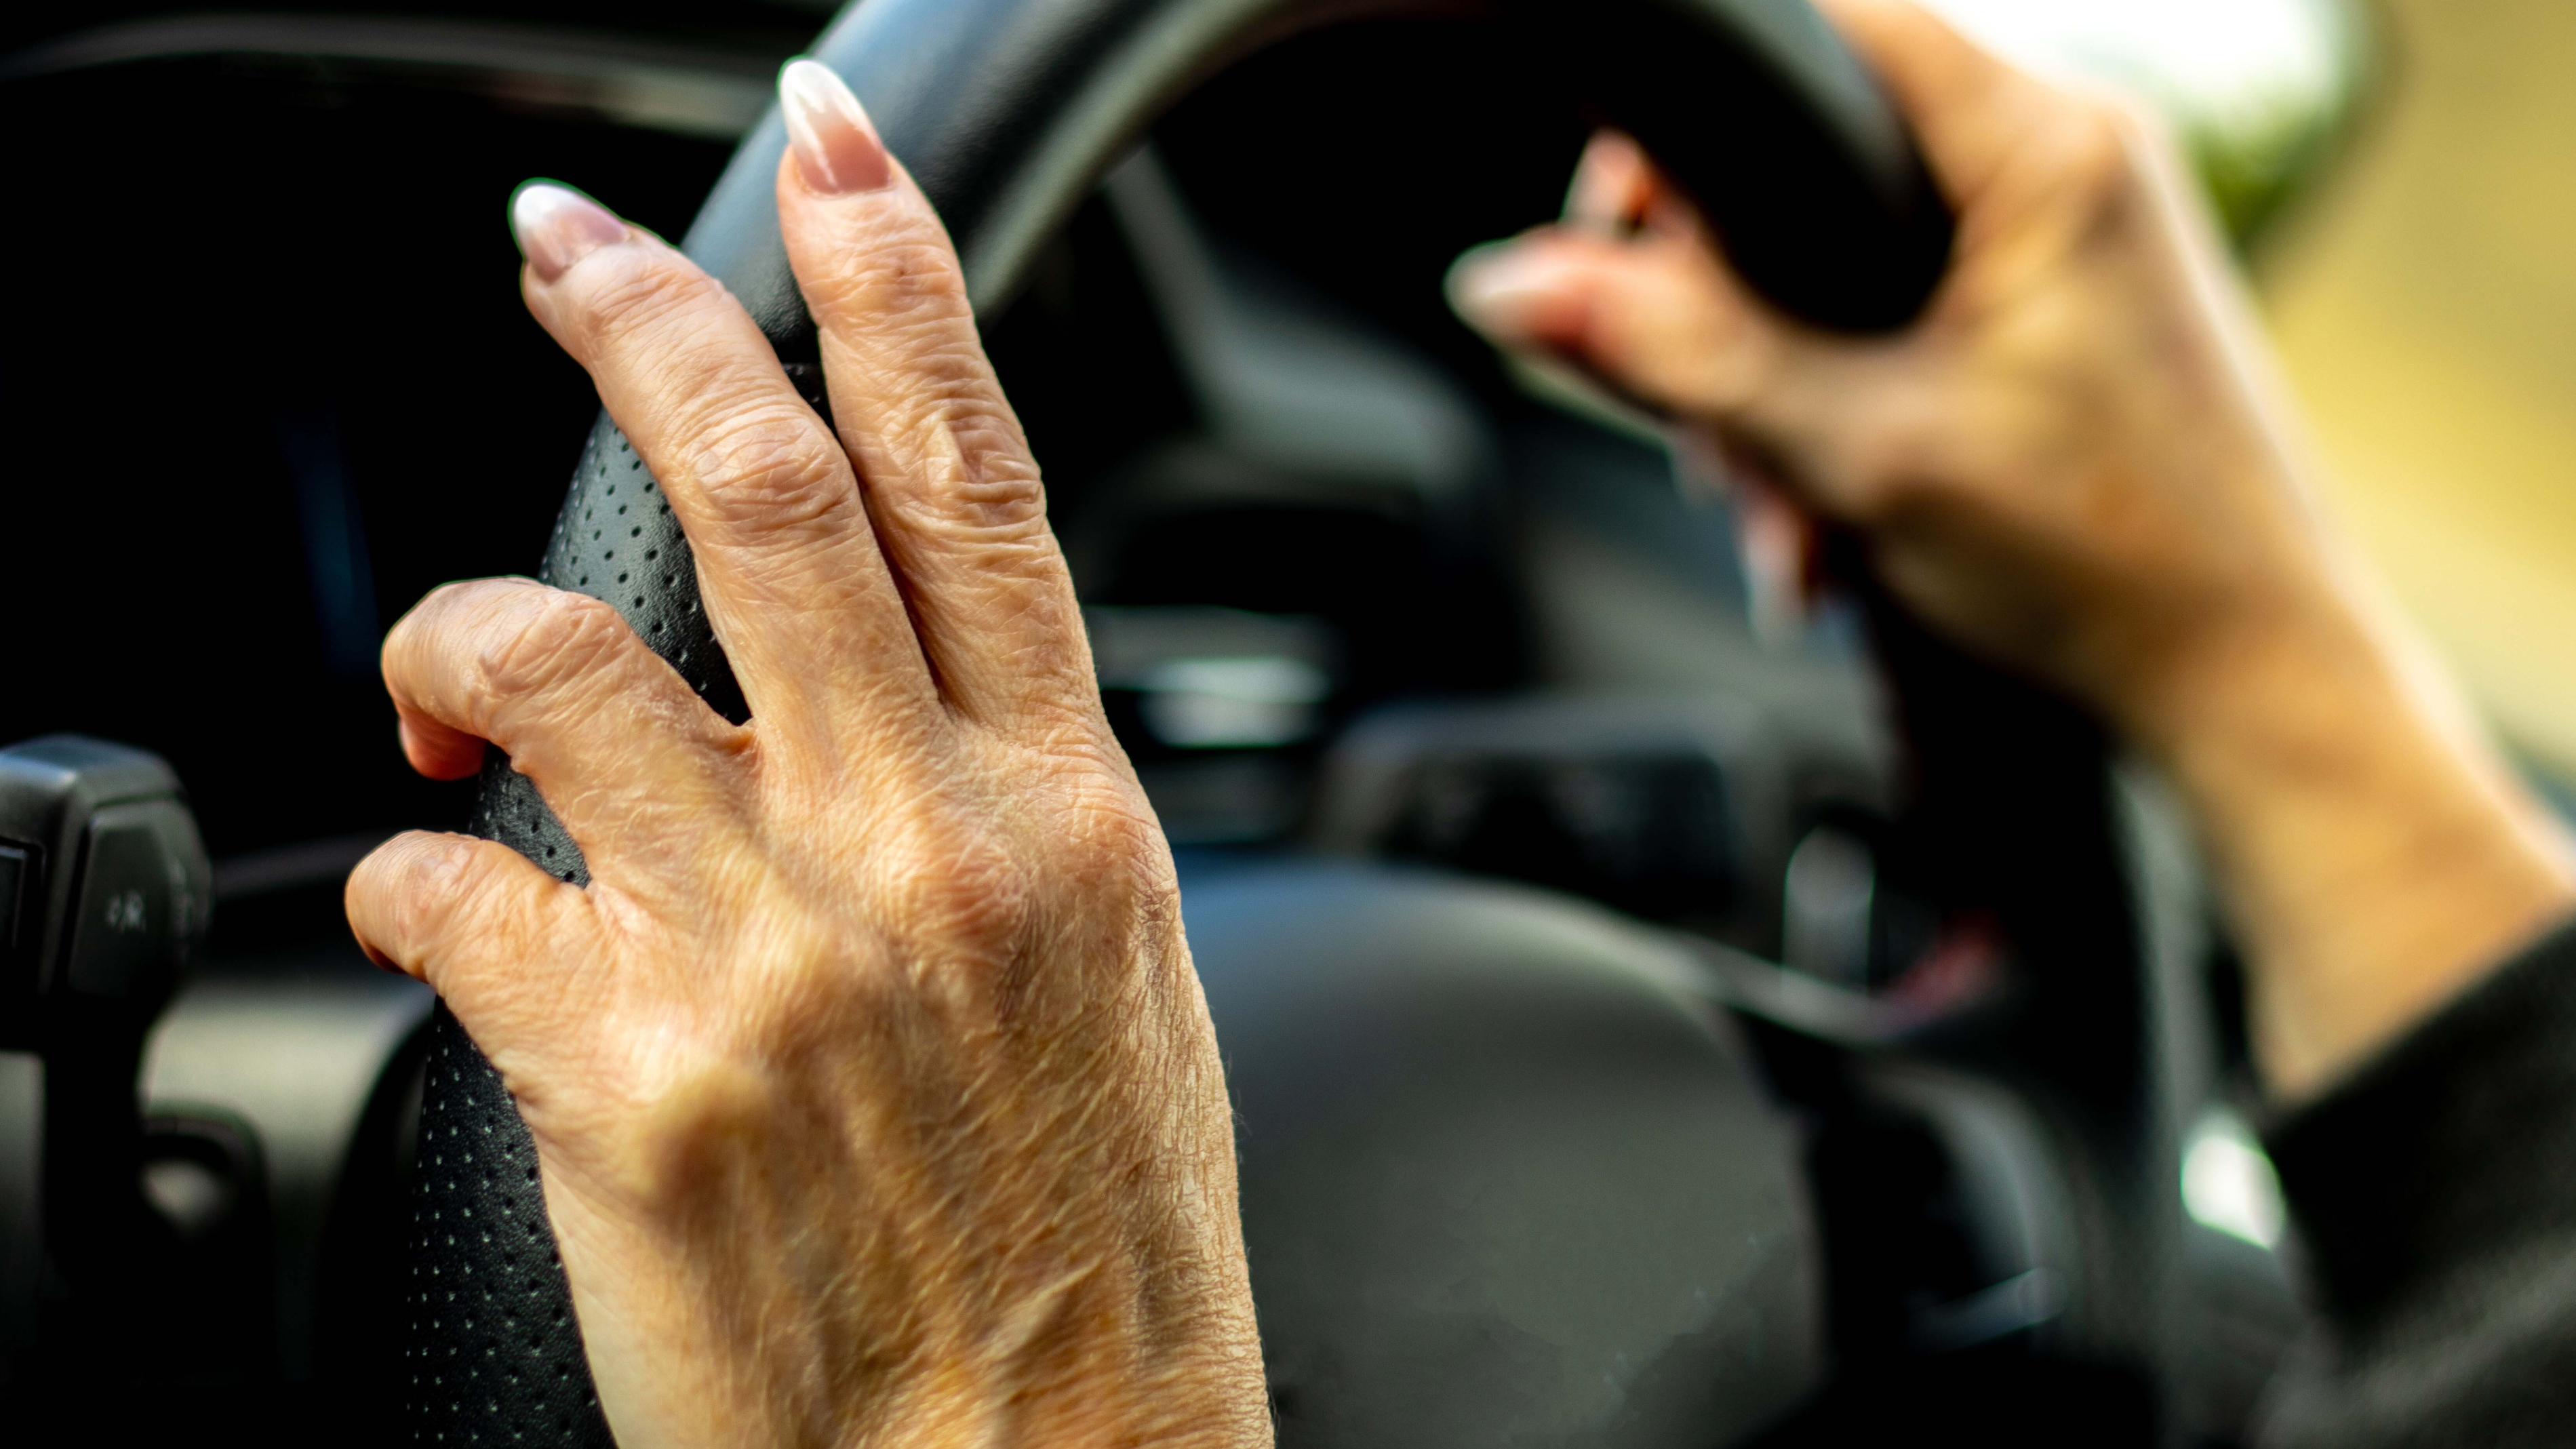 reactie badge Gewoon Je handen in 10 voor 2-positie op je autostuur? Niet veilig, zeggen experts  - Radar - het consumentenprogramma van AVROTROS